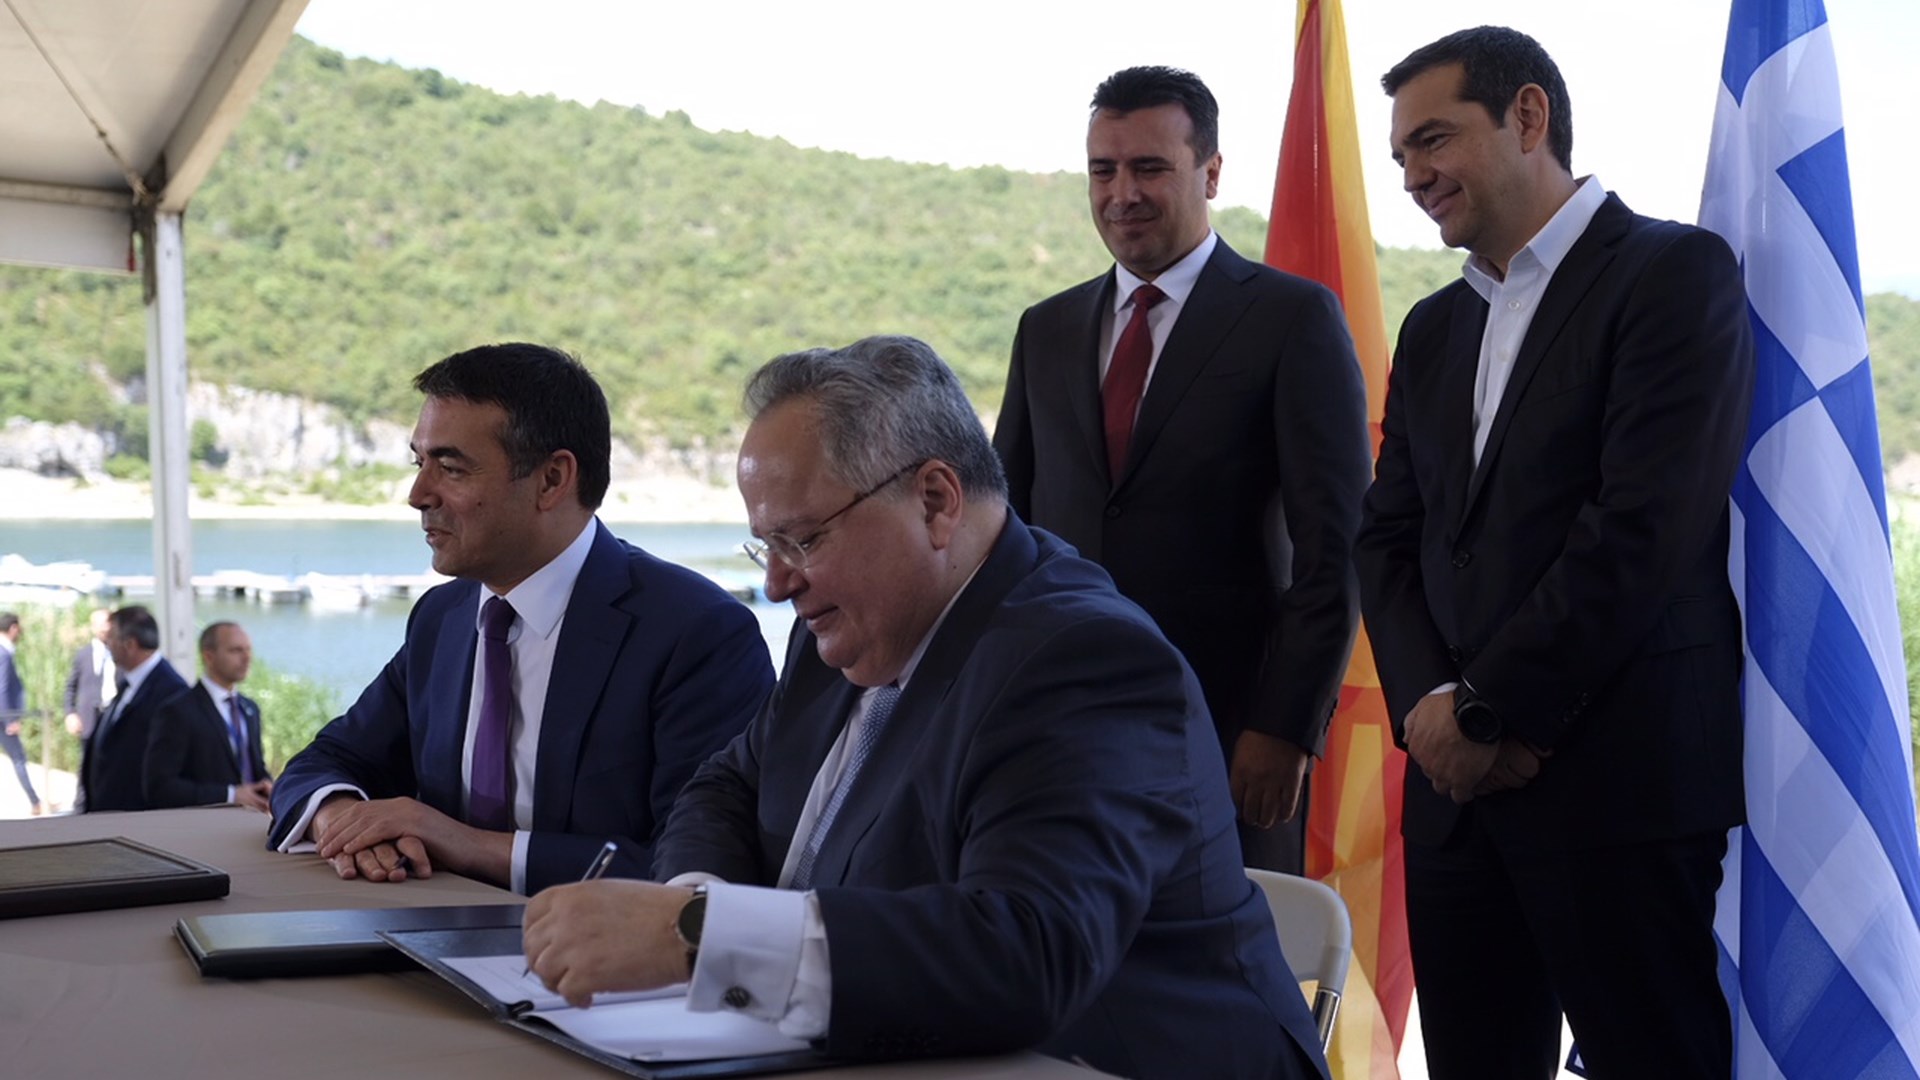 Κοτζιάς: Η εφαρμογή της συμφωνίας και οι προοπτικές συνεργασίας Ελλάδας-ΠΓΔΜ είναι οι προτεραιότητες